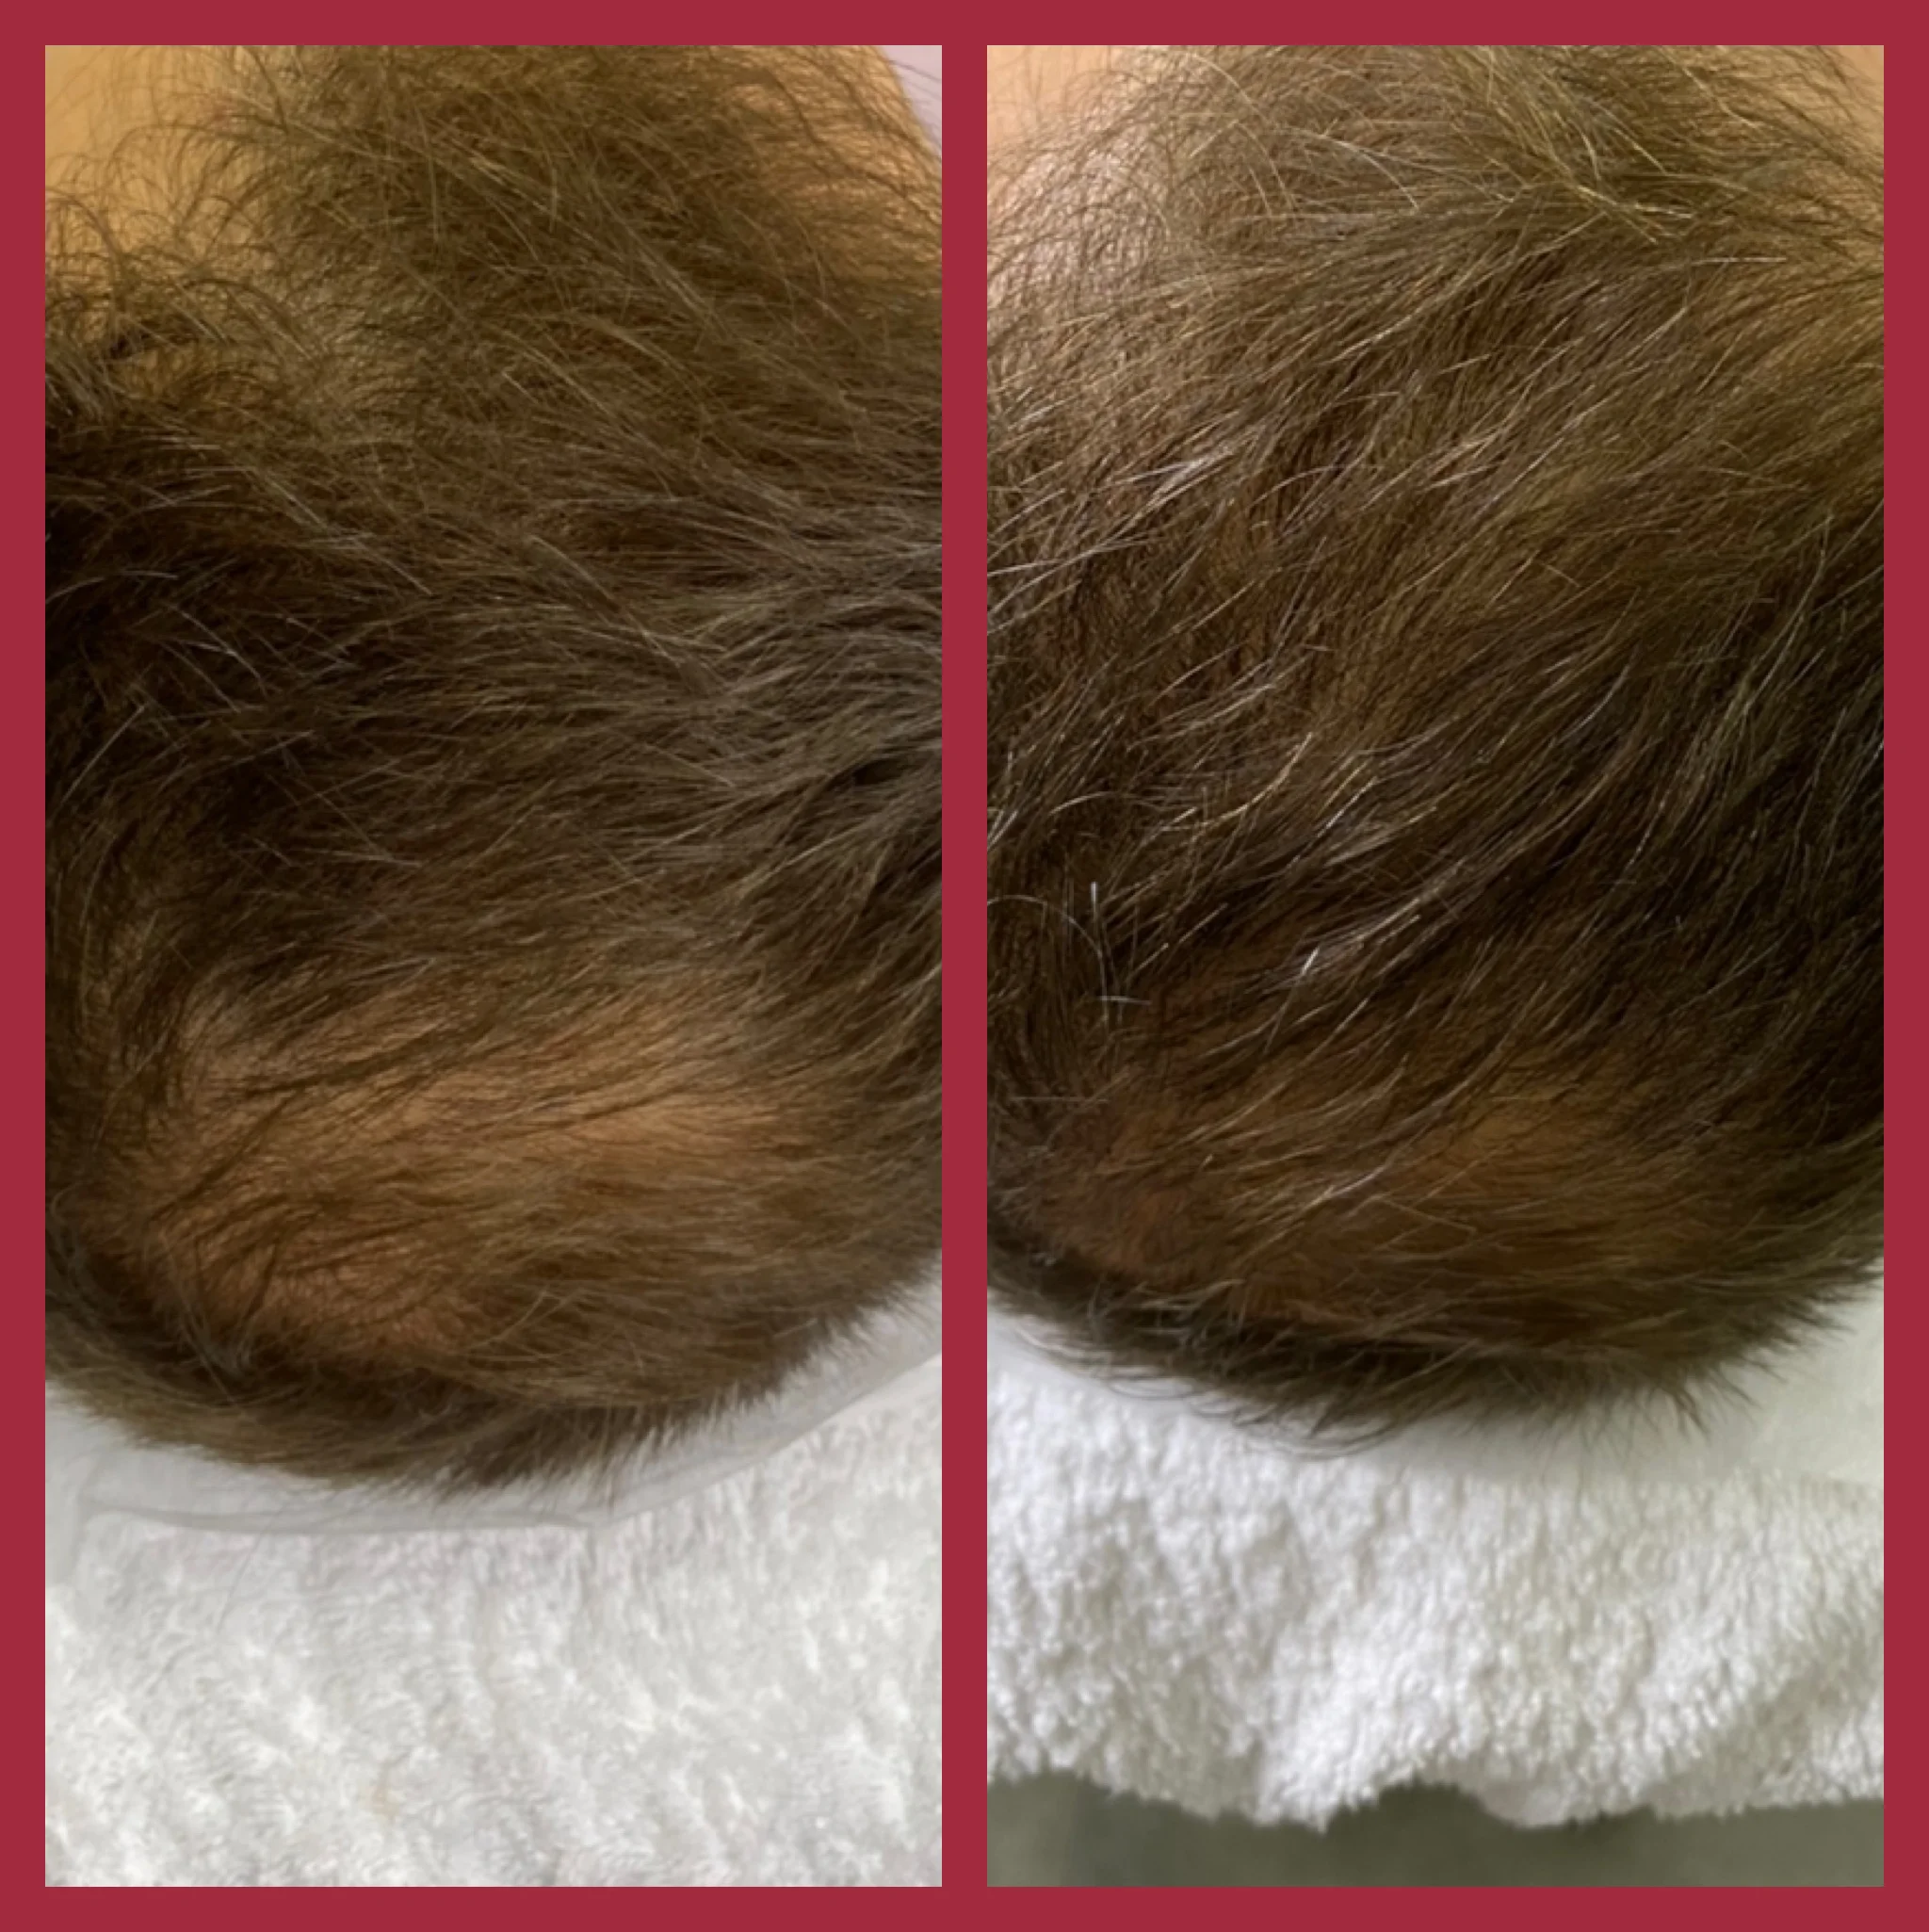 Фото: до и после процедуры лечения выпадения волос